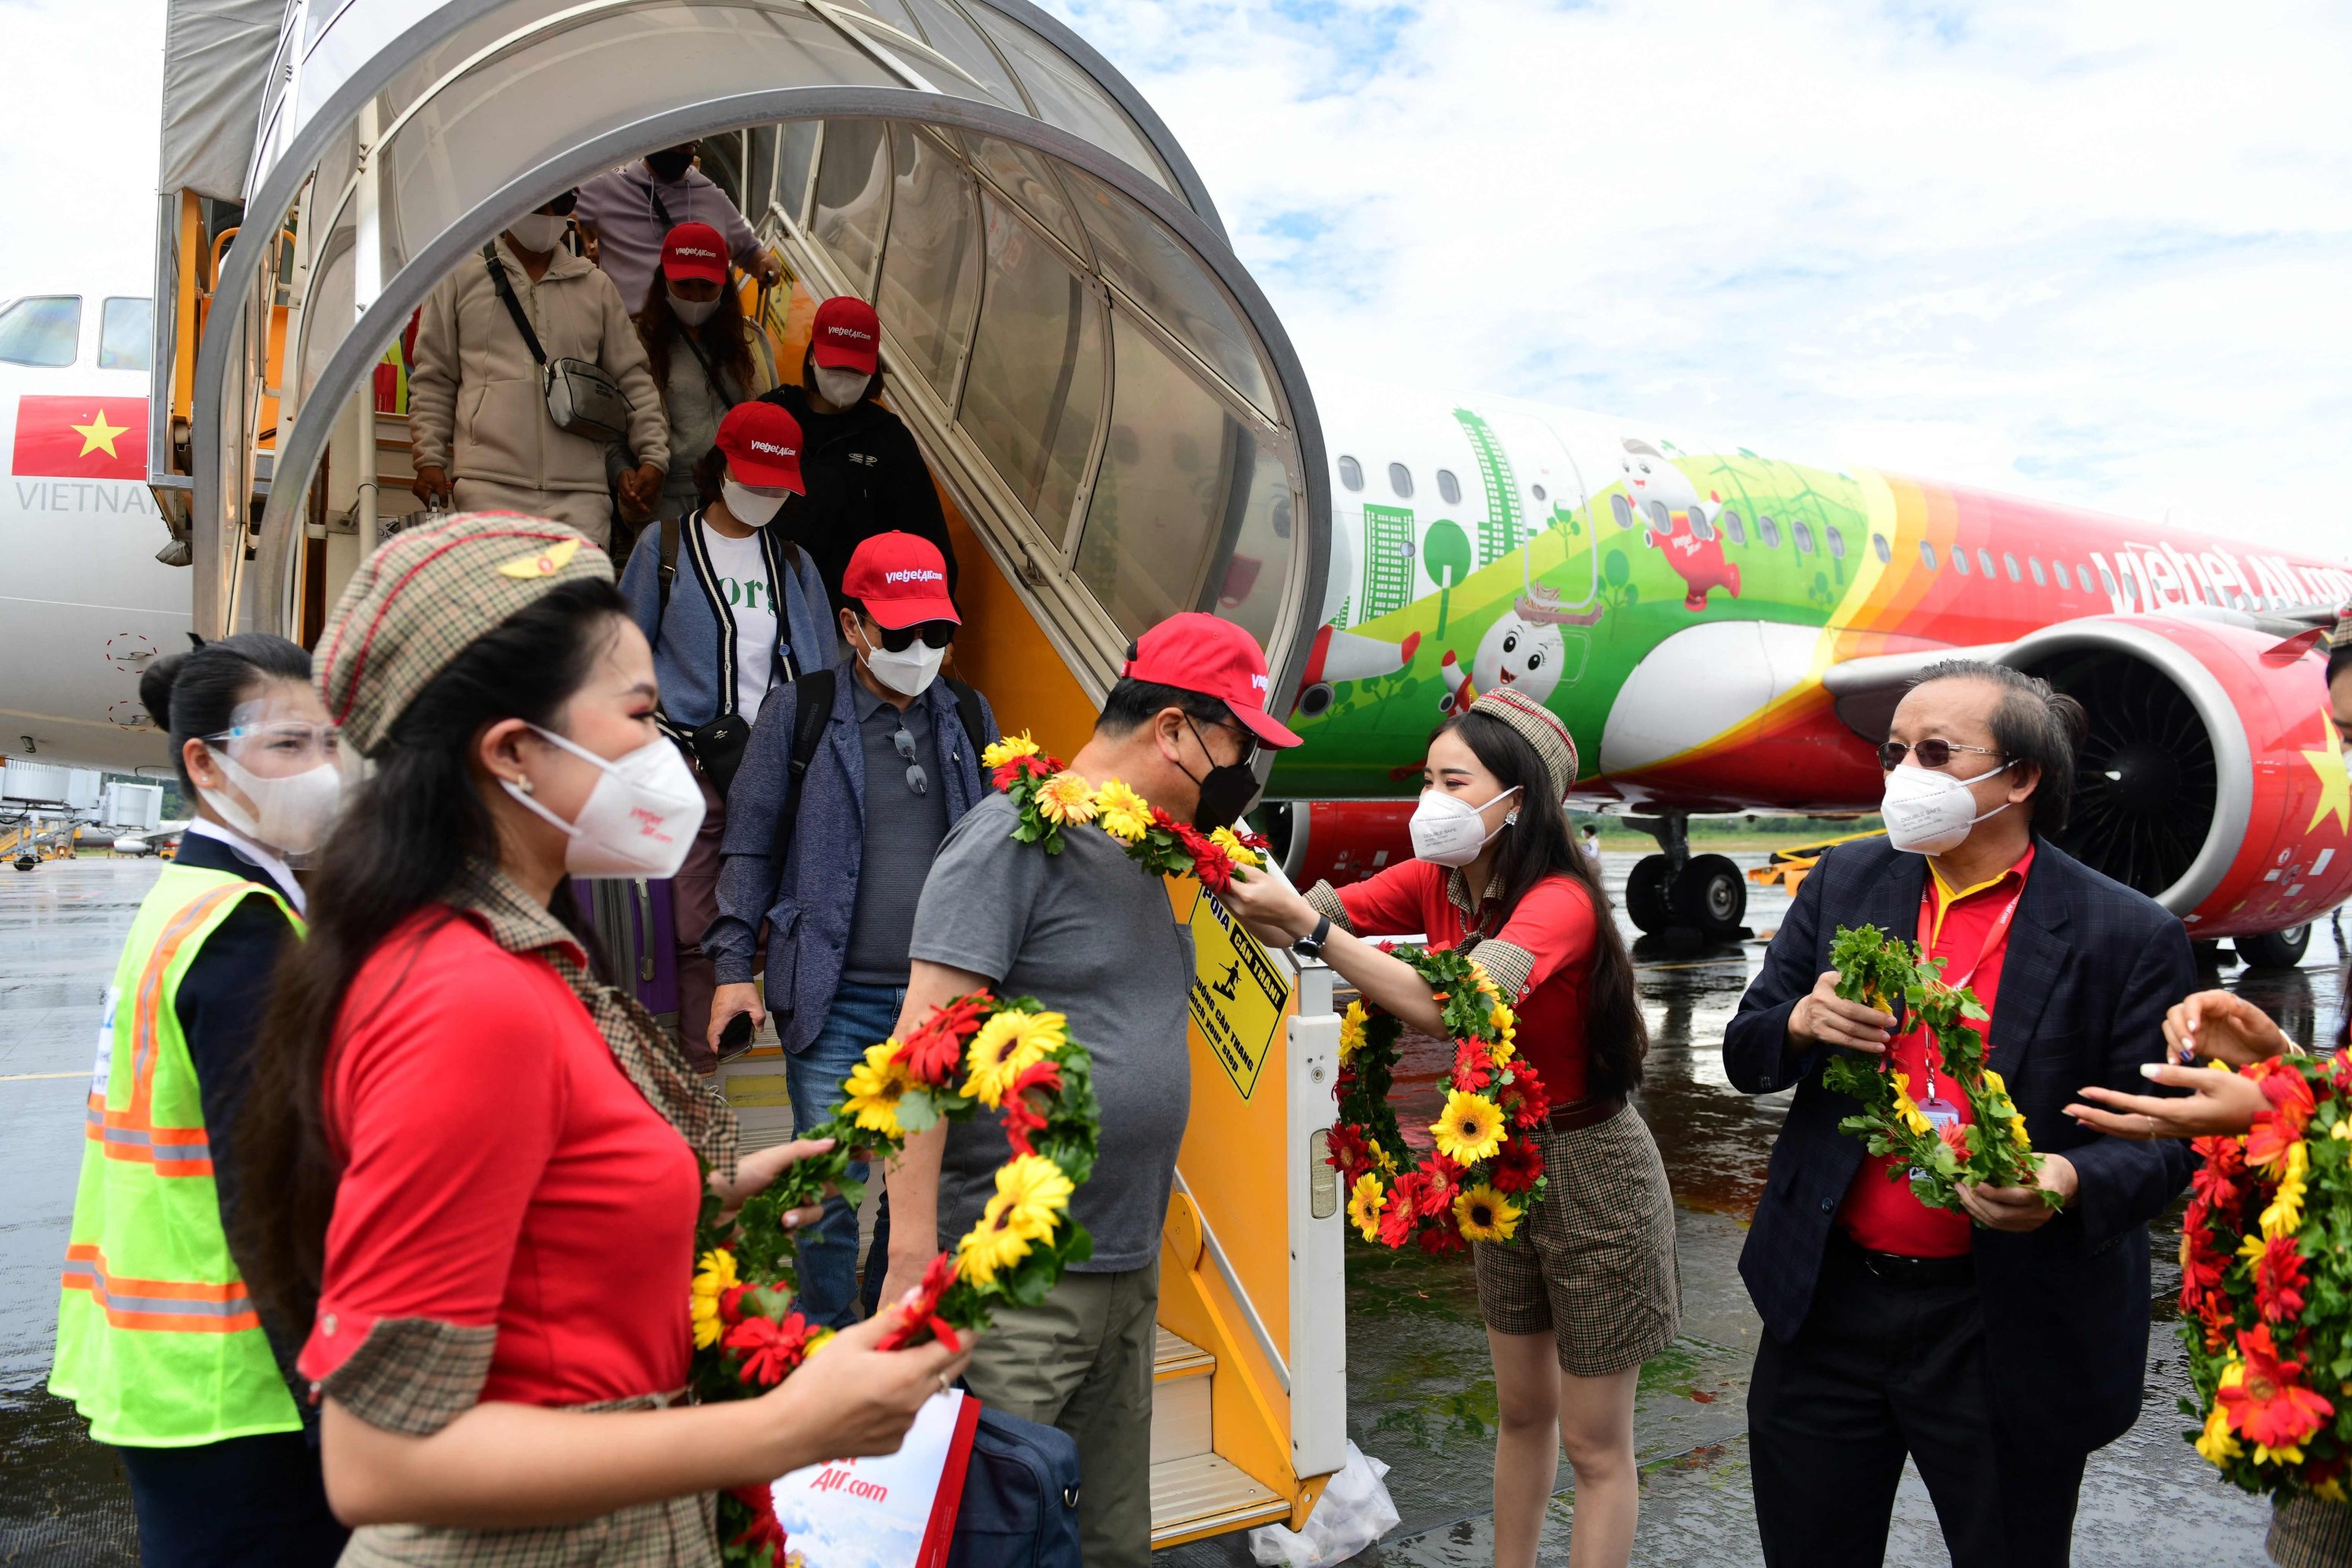 Wisatawan Korea Selatan yang tiba menerima karangan bunga setelah mendarat di pulau Phu Quoc, Vietnam, 20 November 2020. (AFP Photo)